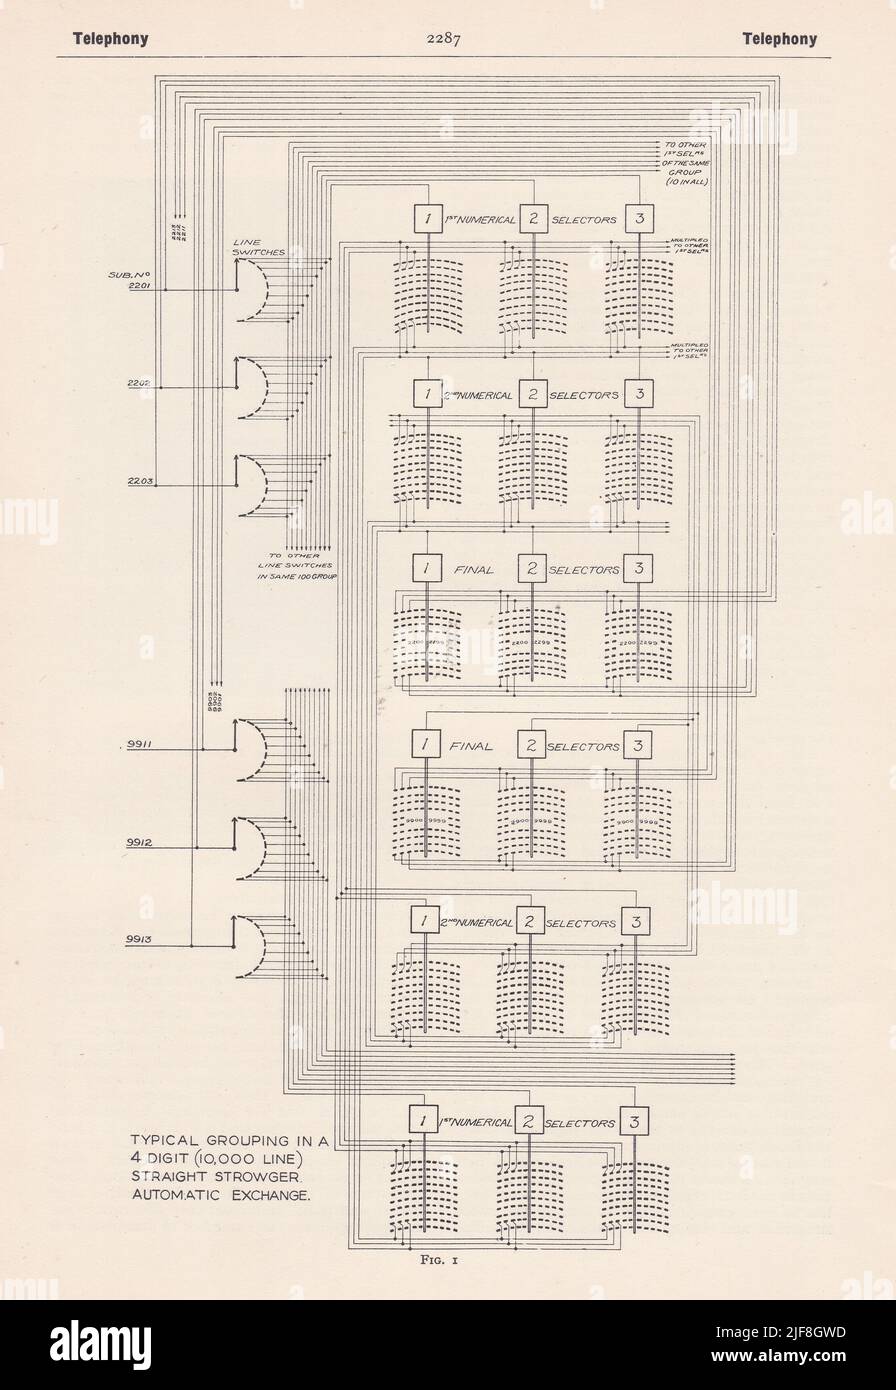 Diagrama clásico del circuito de telefonía. Foto de stock